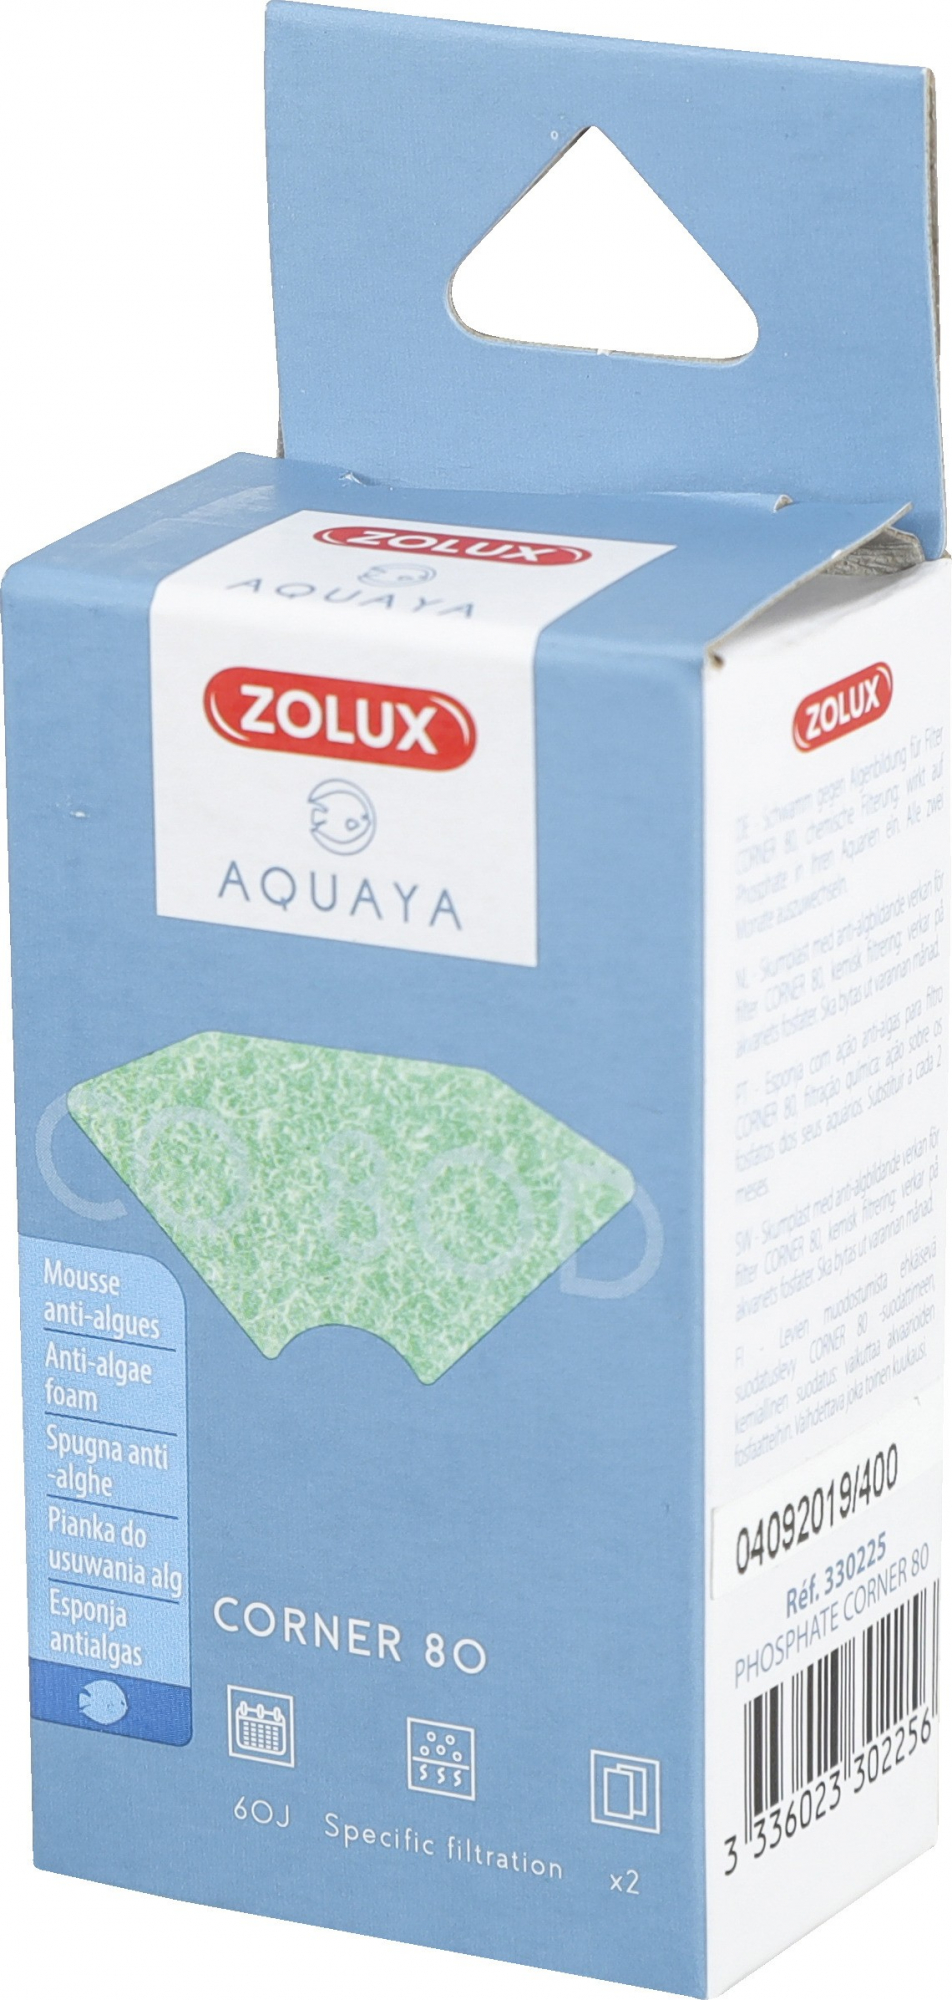 Mousse antifosfato per filtro Corner Aquaya